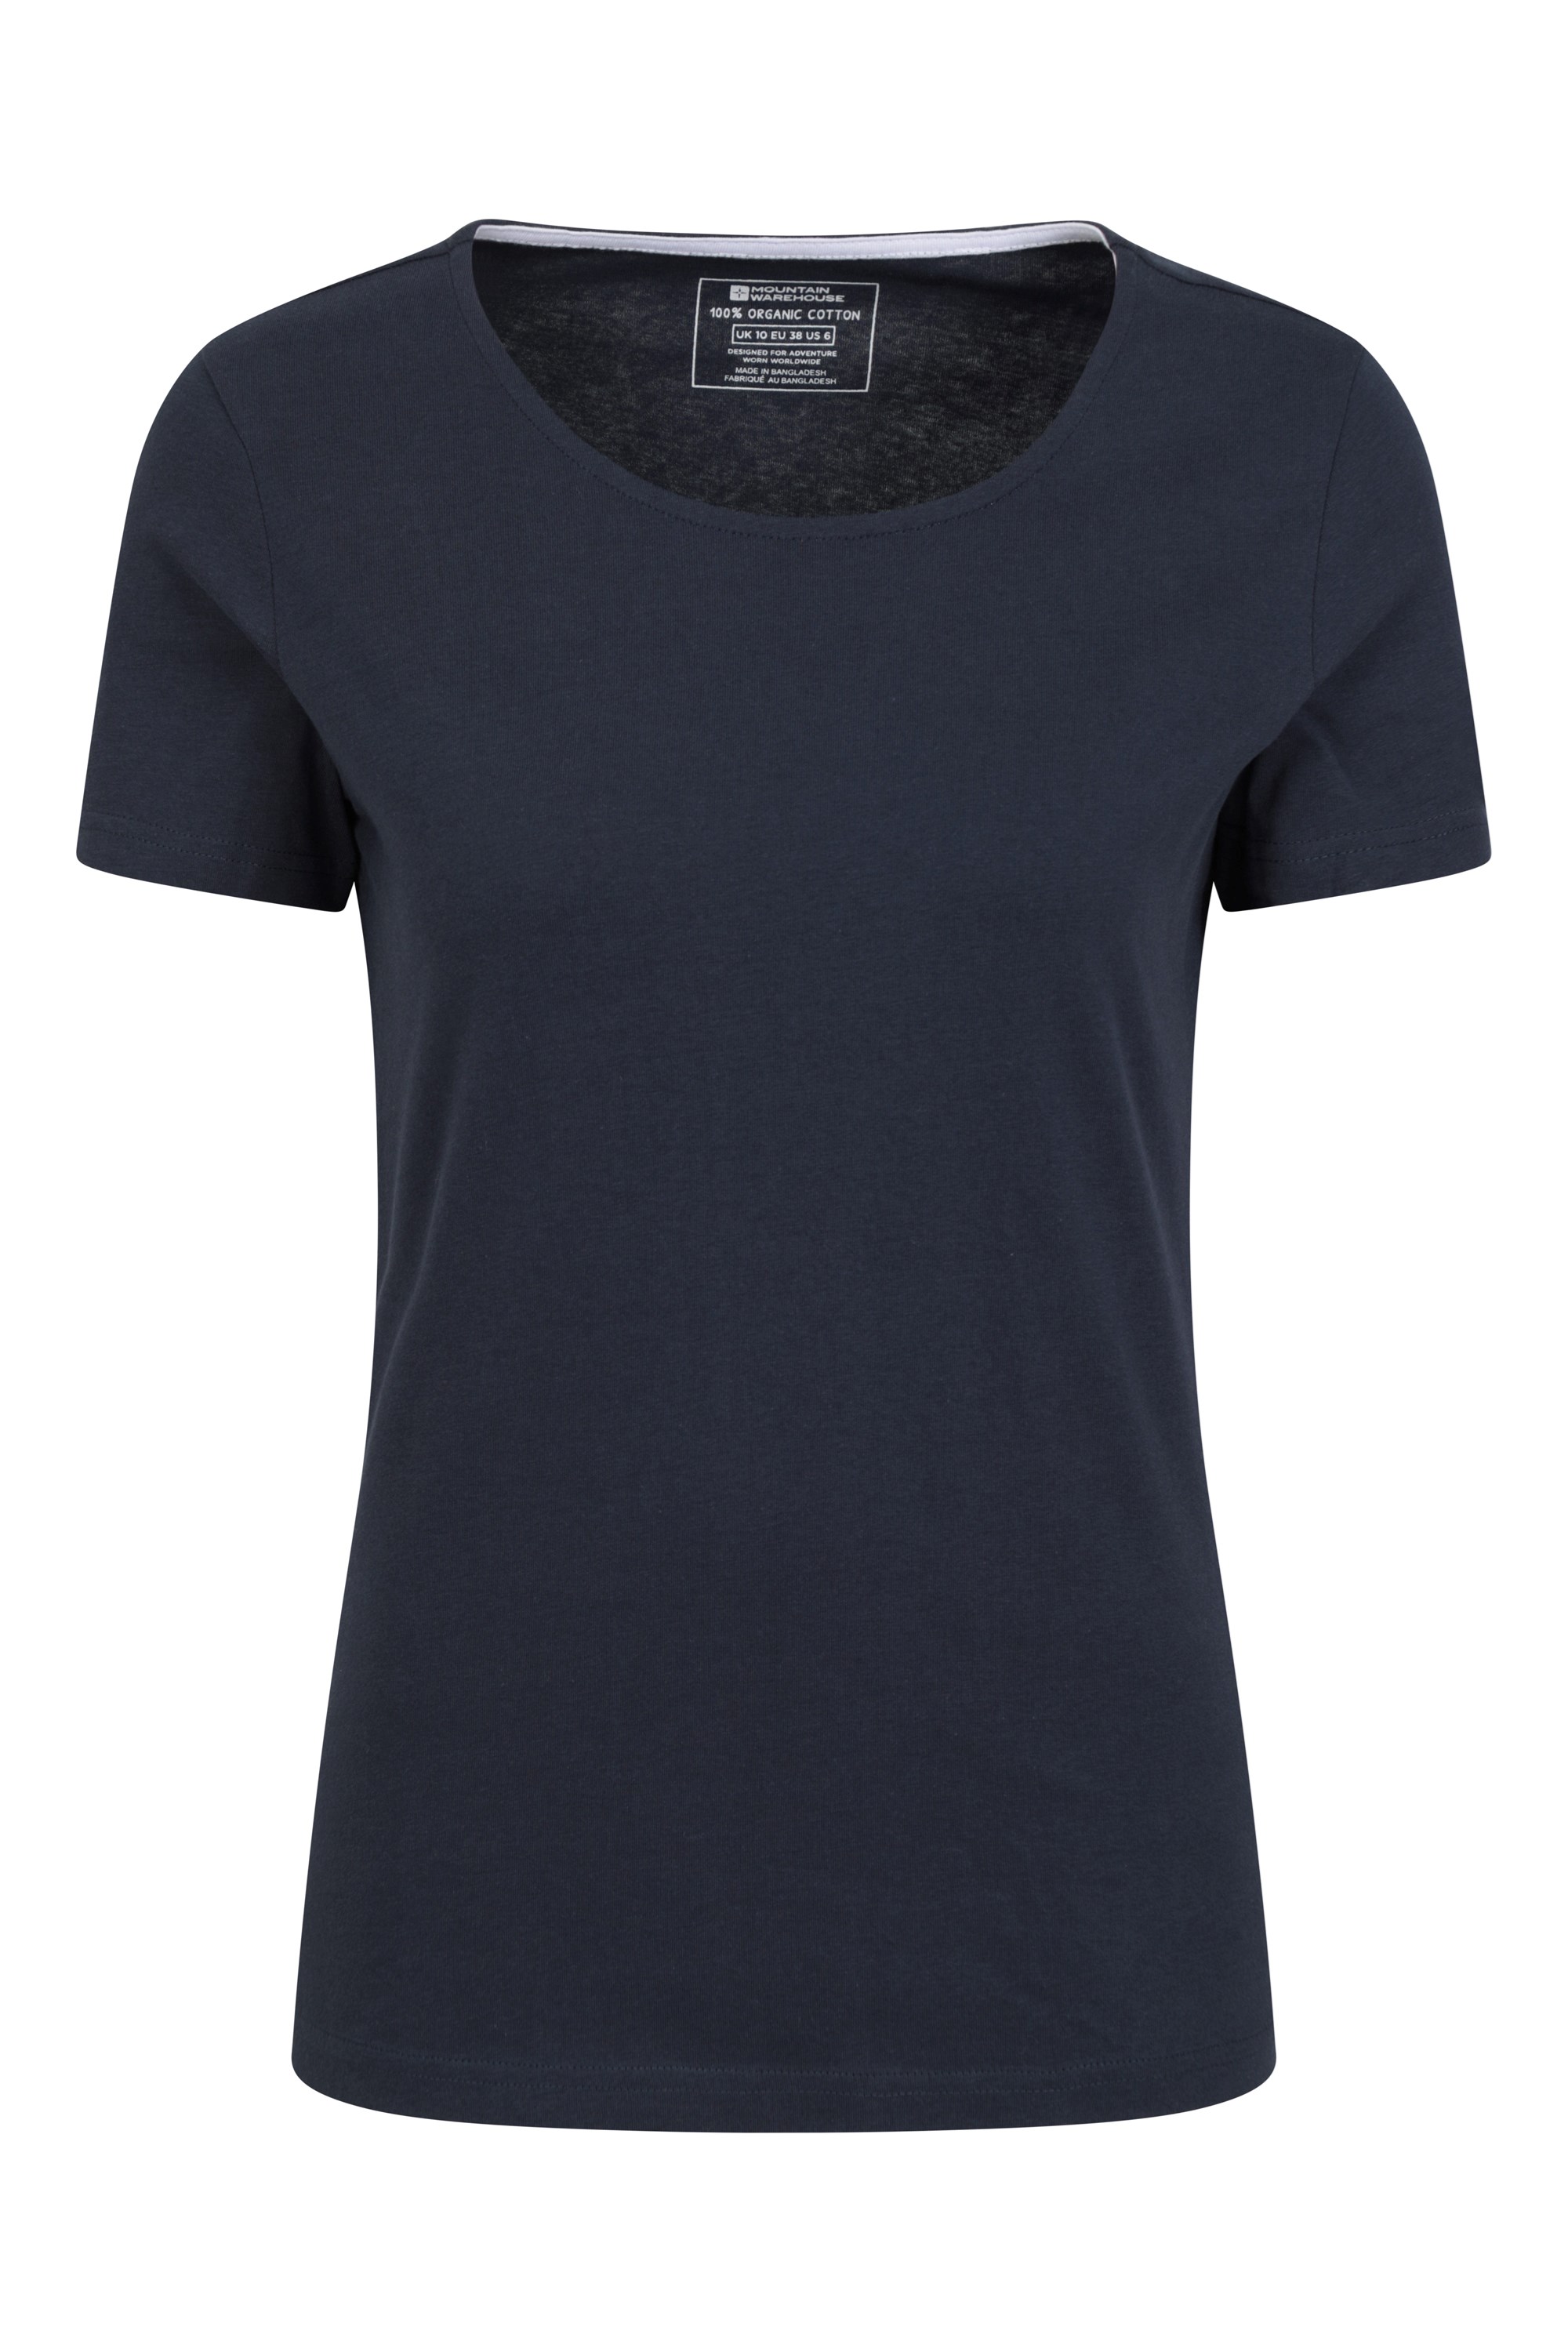 Eden Womens Organic Round Neck T-Shirt - Navy